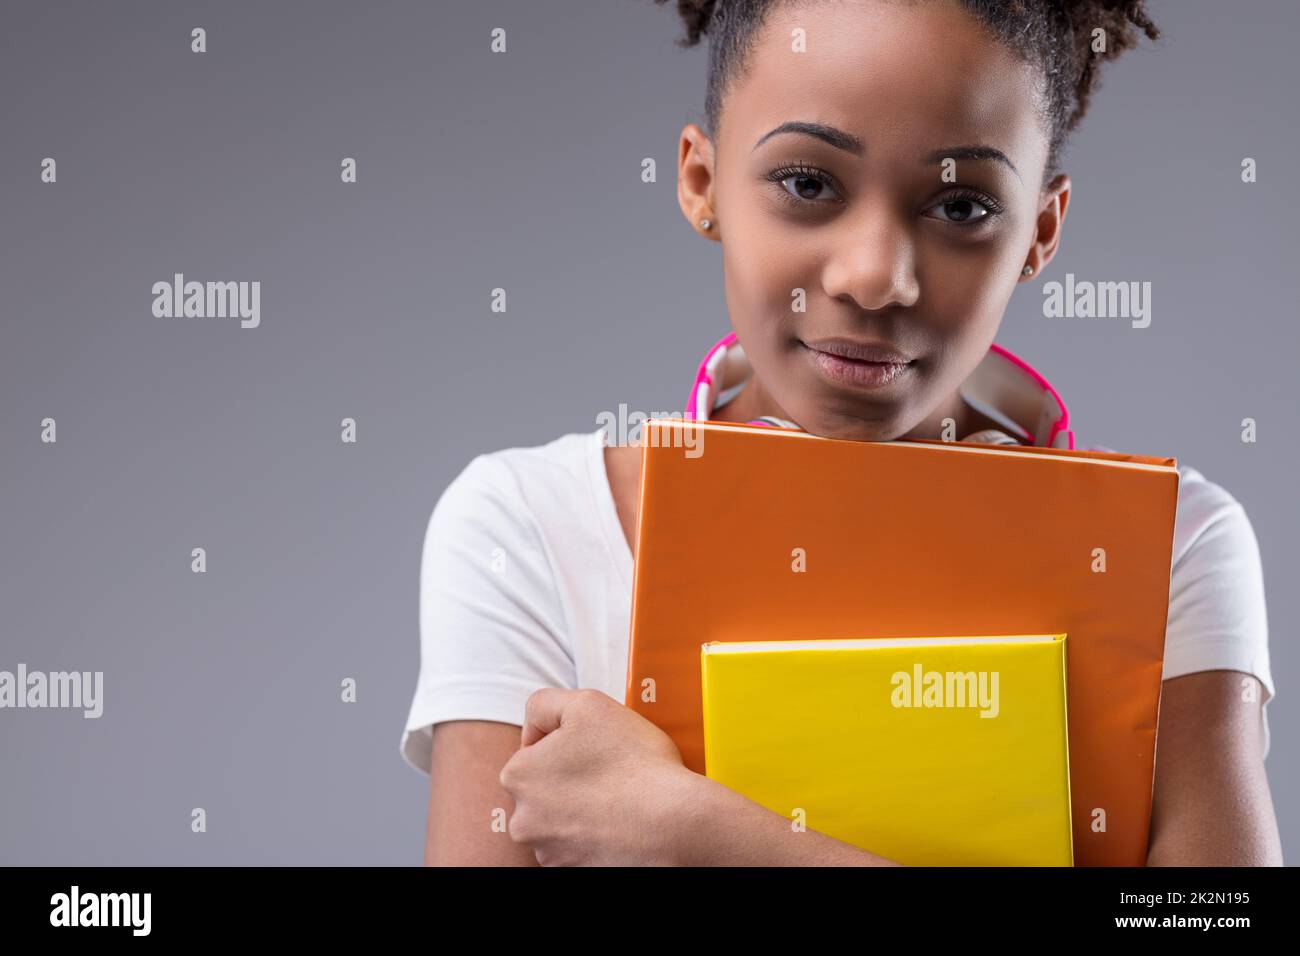 Seria giovane studentessa nera che si aggrappa ai suoi libri Foto Stock